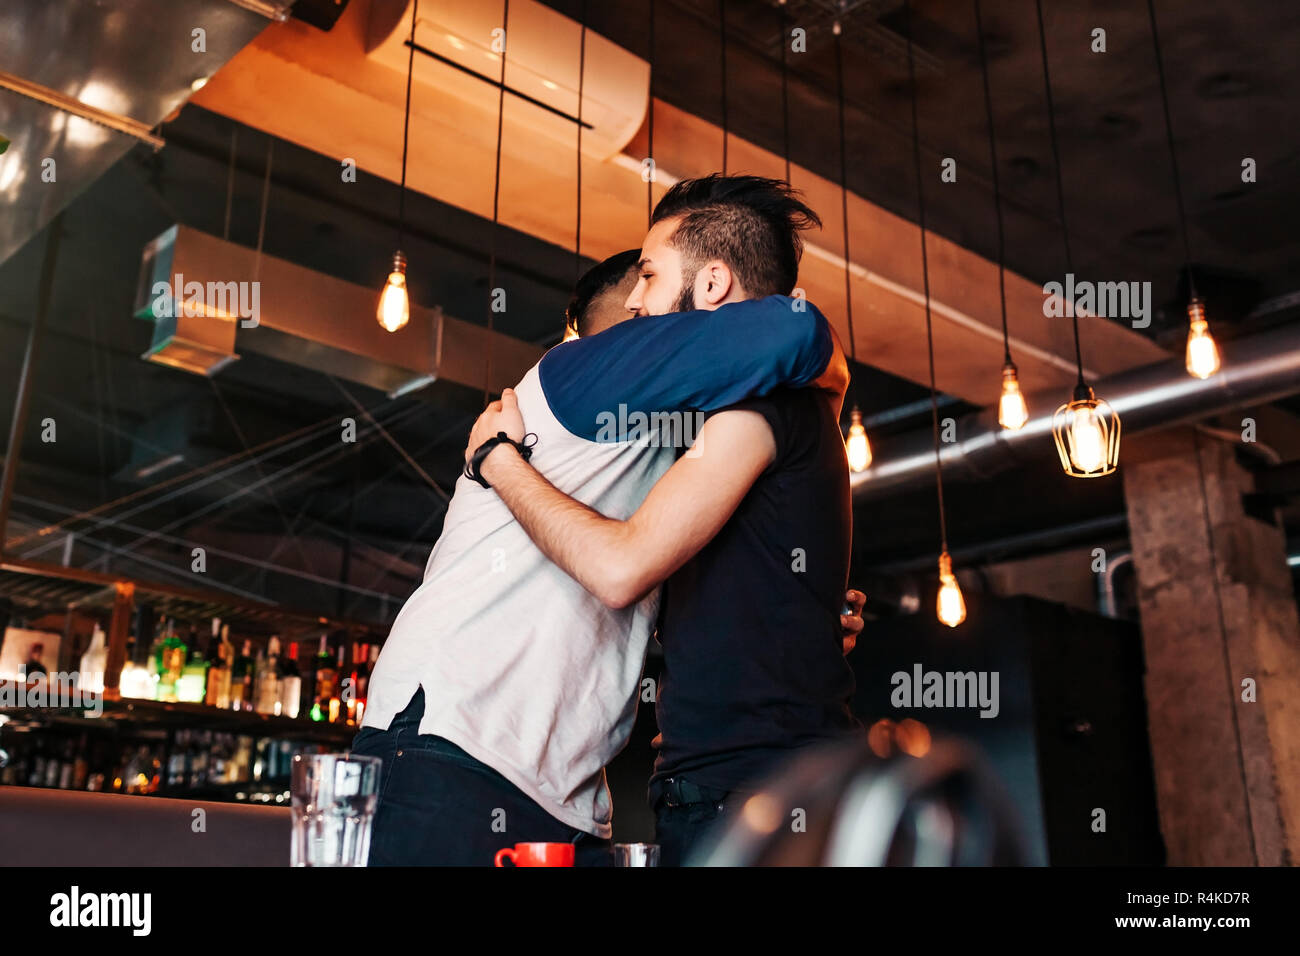 Arabische junge Männer treffen im Lounge Café. Echte Gefühle von besten Freunden gerne jeden anderen zu sehen. Stockfoto